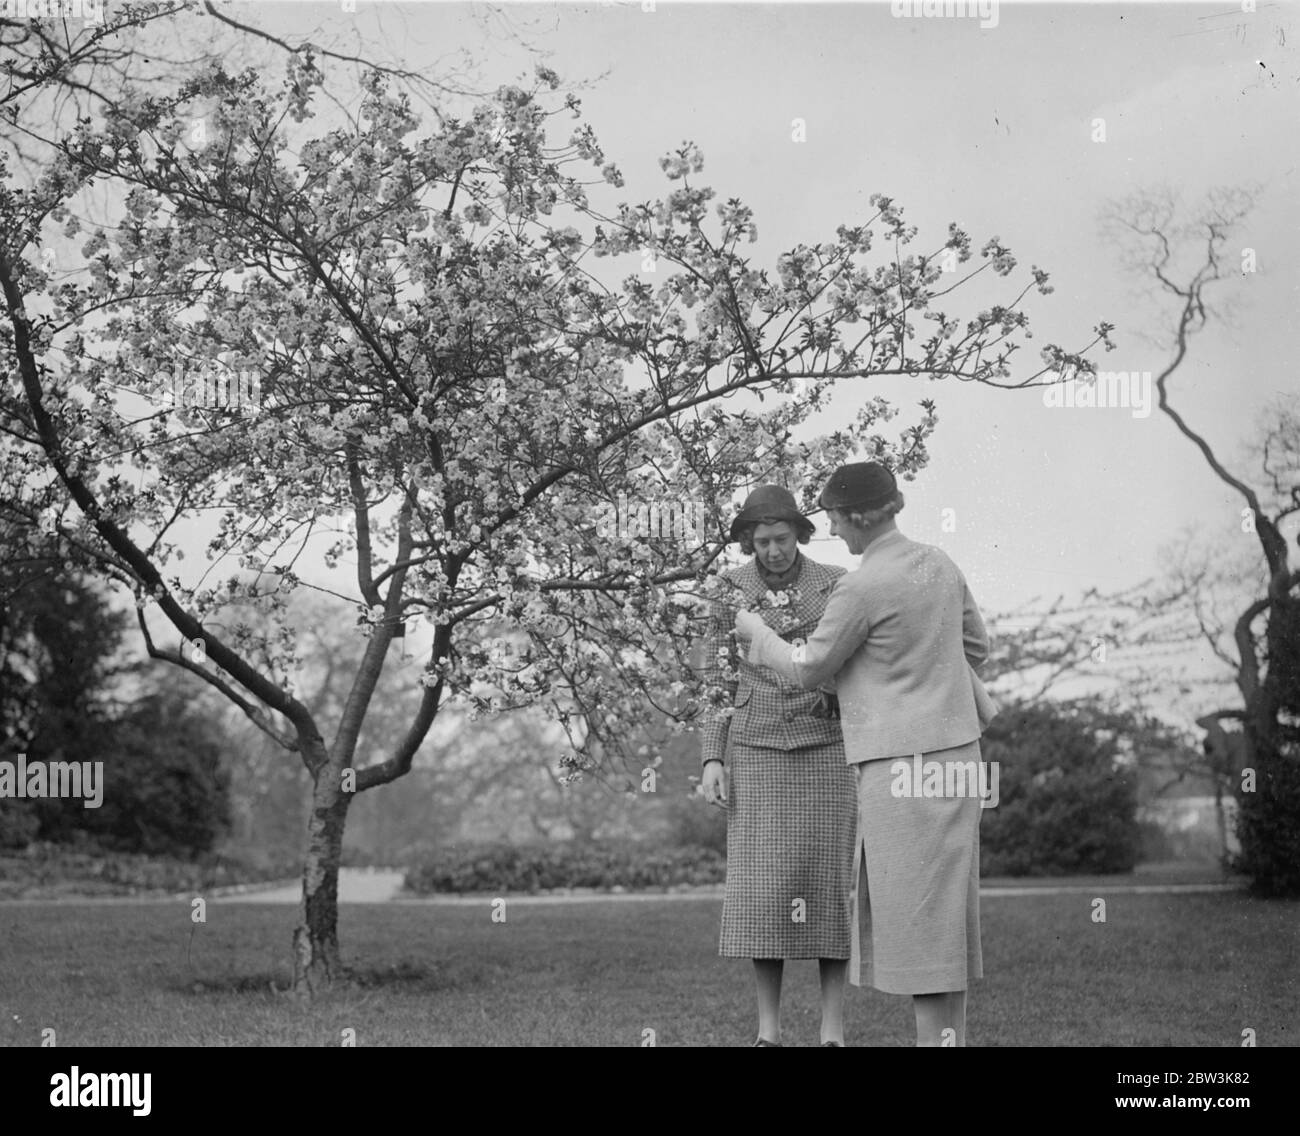 Tempo di fioritura dei ciliegi al Kew . Un albero di ciliegio giapponese a Kew Gardens è ora in piena fioritura e fornisce uno spettacolo glorioso per i visitatori . Spettacoli fotografici , visitatori che ammirano il ciliegio giapponese in fiore ai Kew Gardens . 18 aprile 1936 Foto Stock